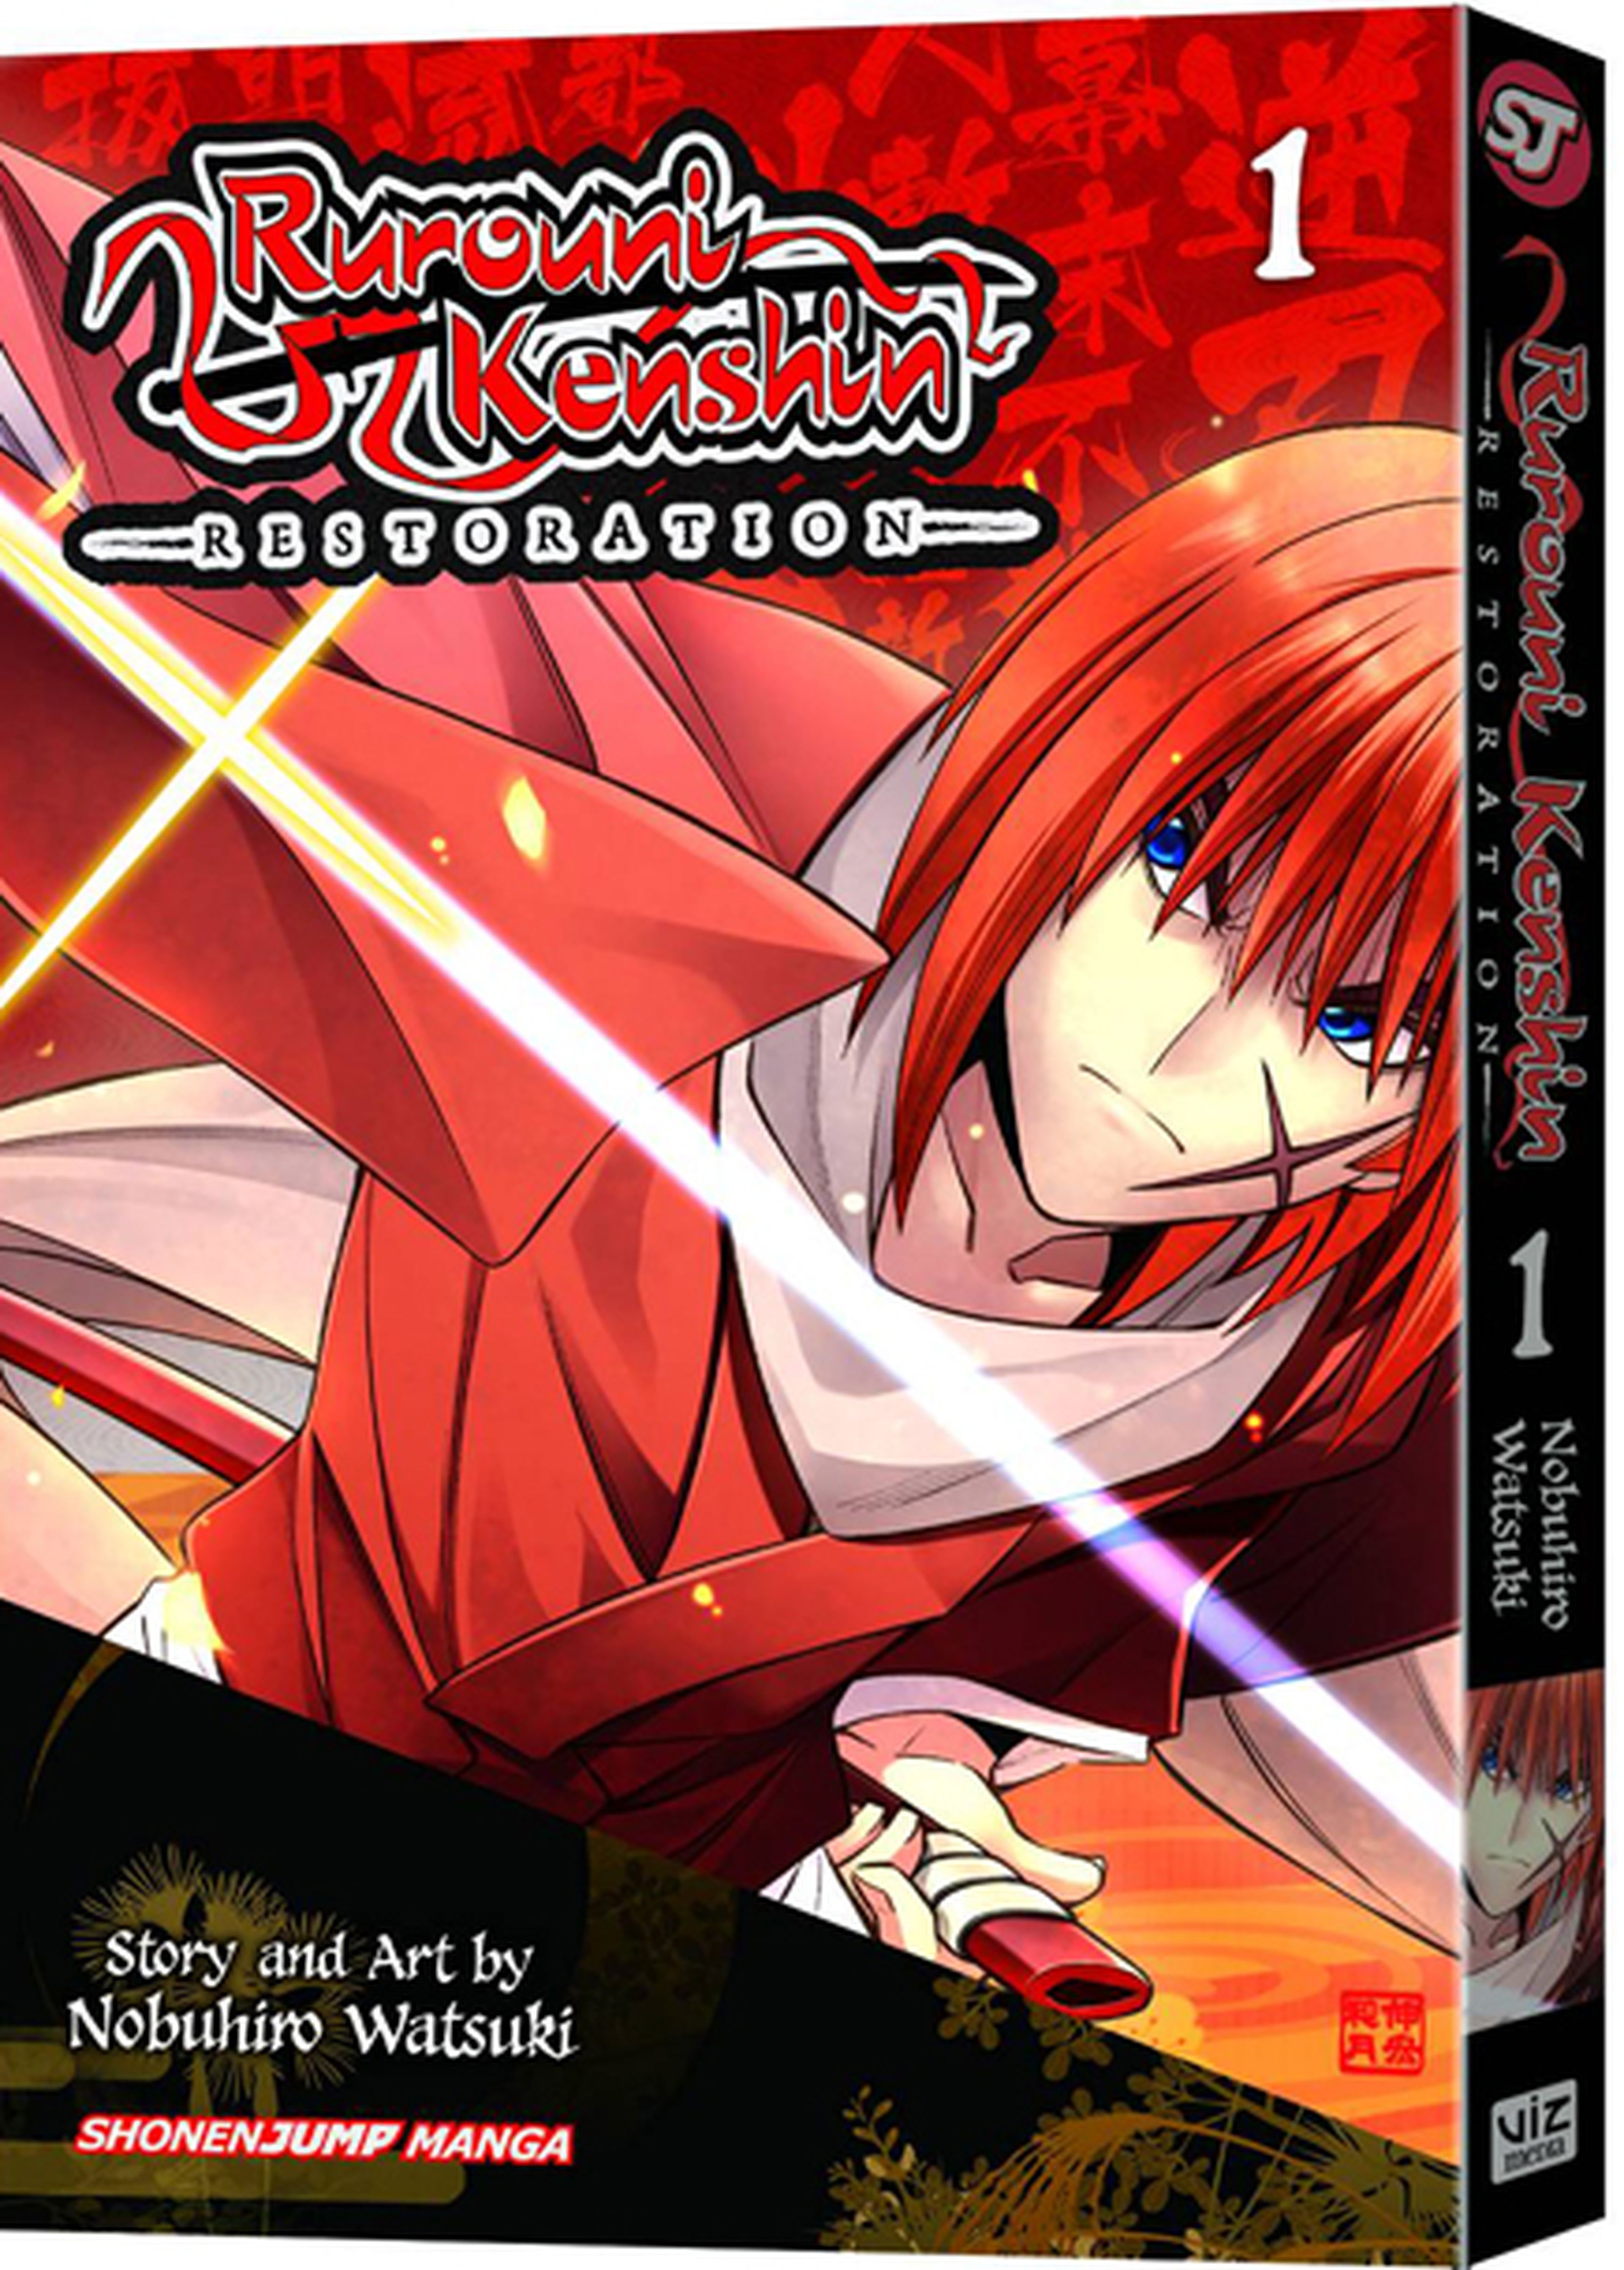 El manga Rurouni Kenshin: Restauración, licenciado